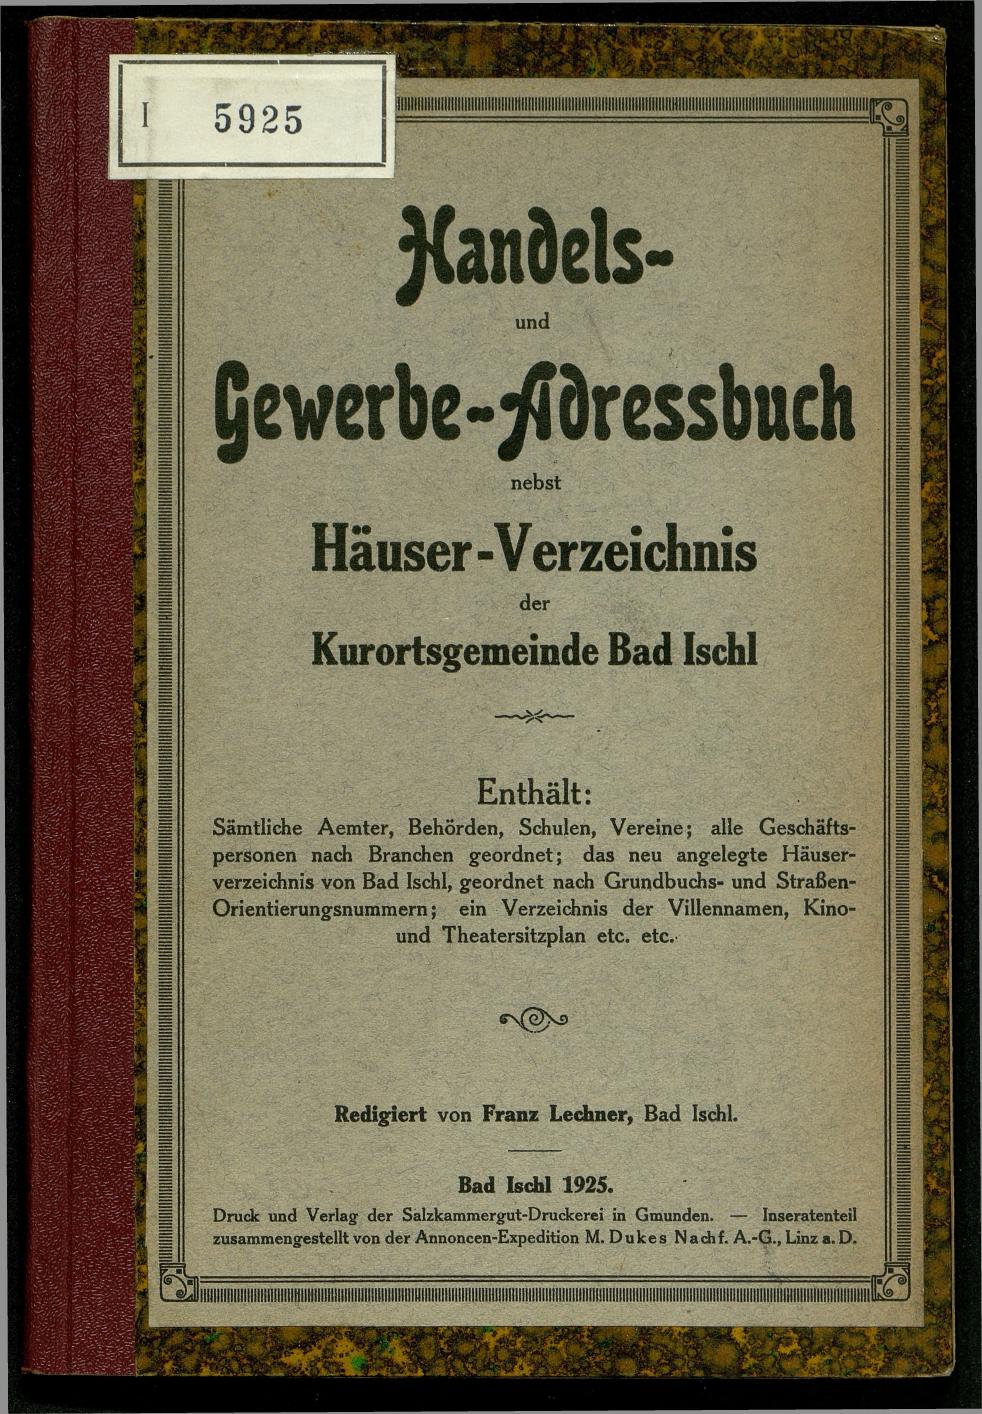 Handels- und Gewerbe-Adressbuch nebst Häuser-Verzeichnis der Kurortsgemeinde Bad Ischl 1925 - Seite 1